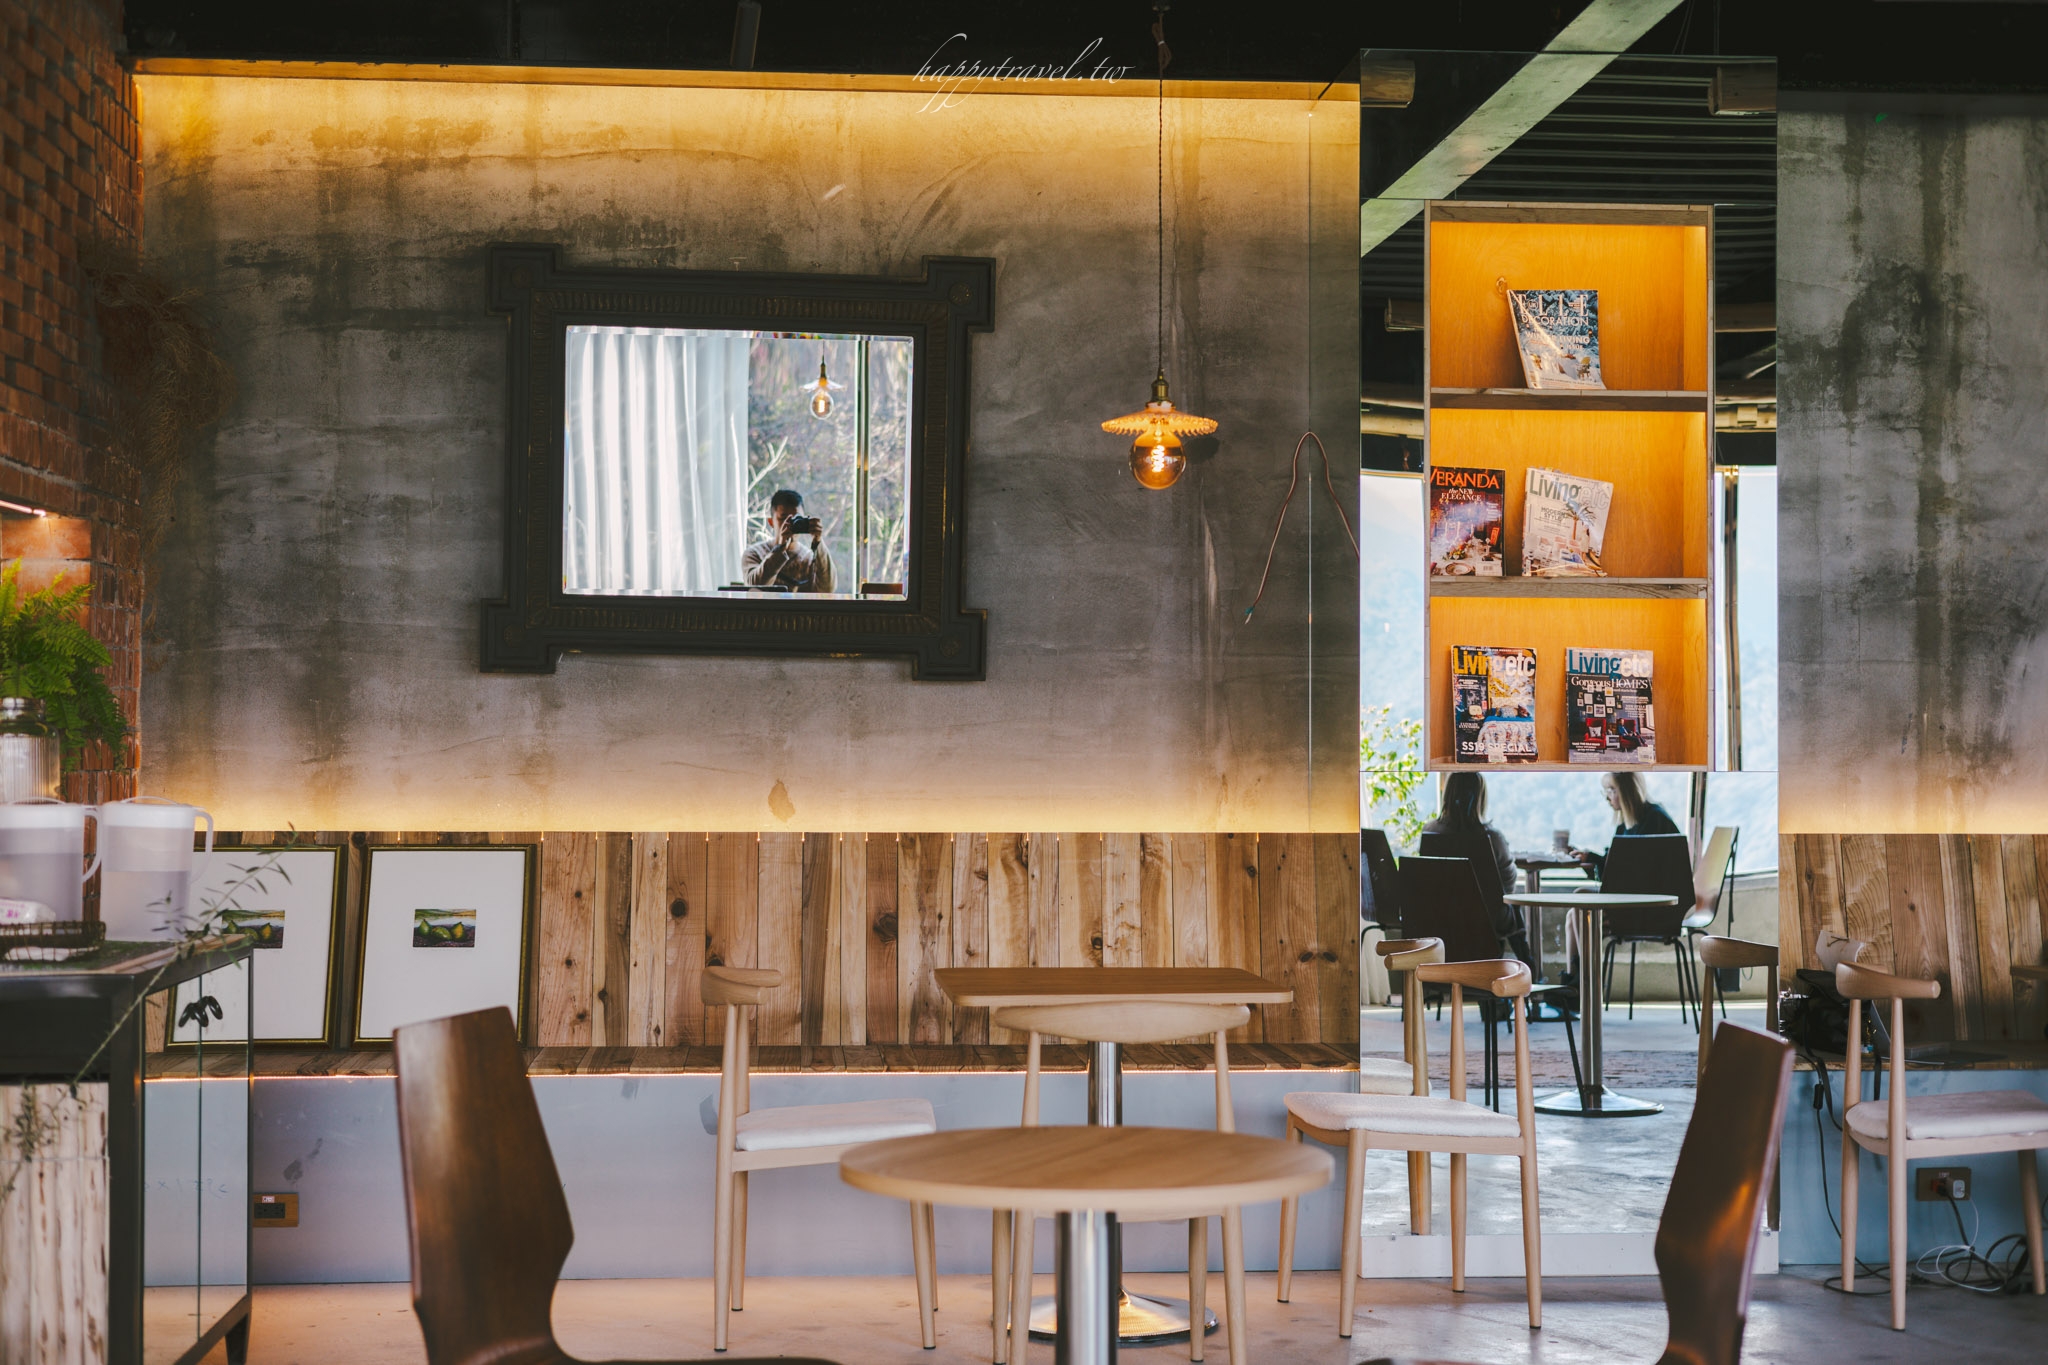 南投咖啡廳。Mountain Bica Cafe｜波希米亞與森林風格結合的全新秘境咖啡廳，在迷霧森林中享受180零死角美景，清境咖啡廳/清境景點/清境餐廳